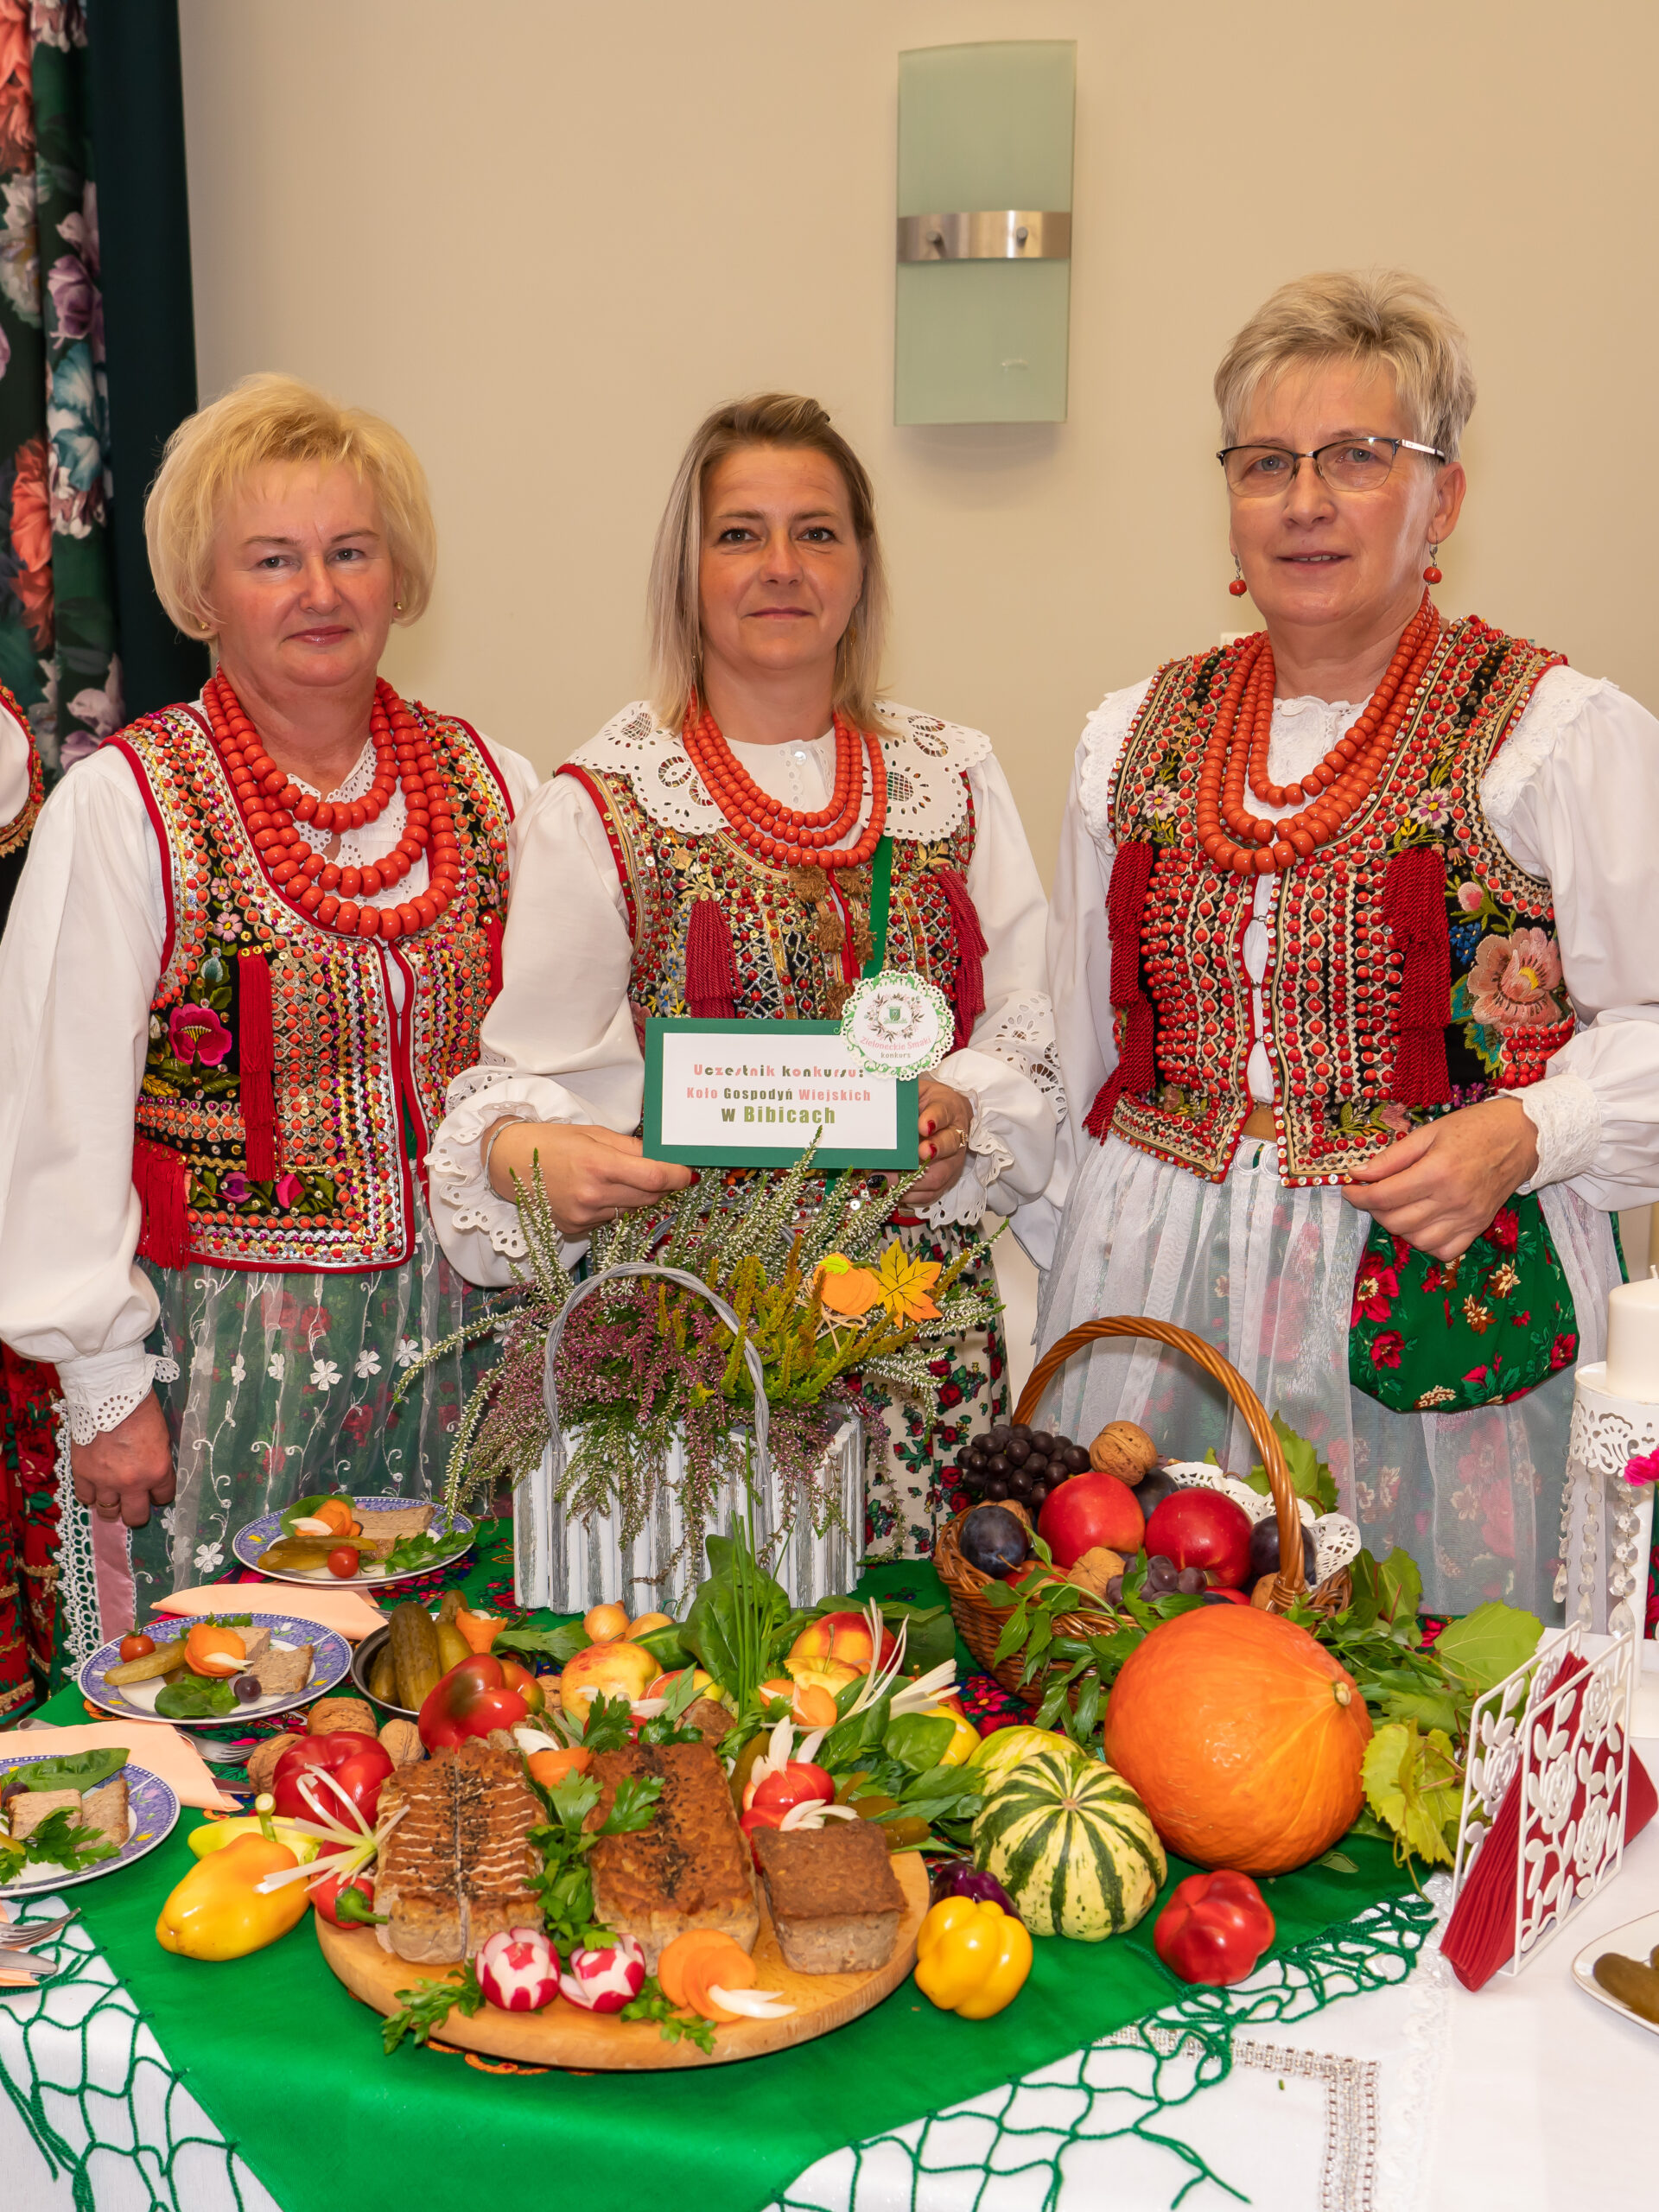 zdjęcie przedstawia trzy kobiety w strojach krakowskich przy stoliku z dekoracjami i jedzeniem